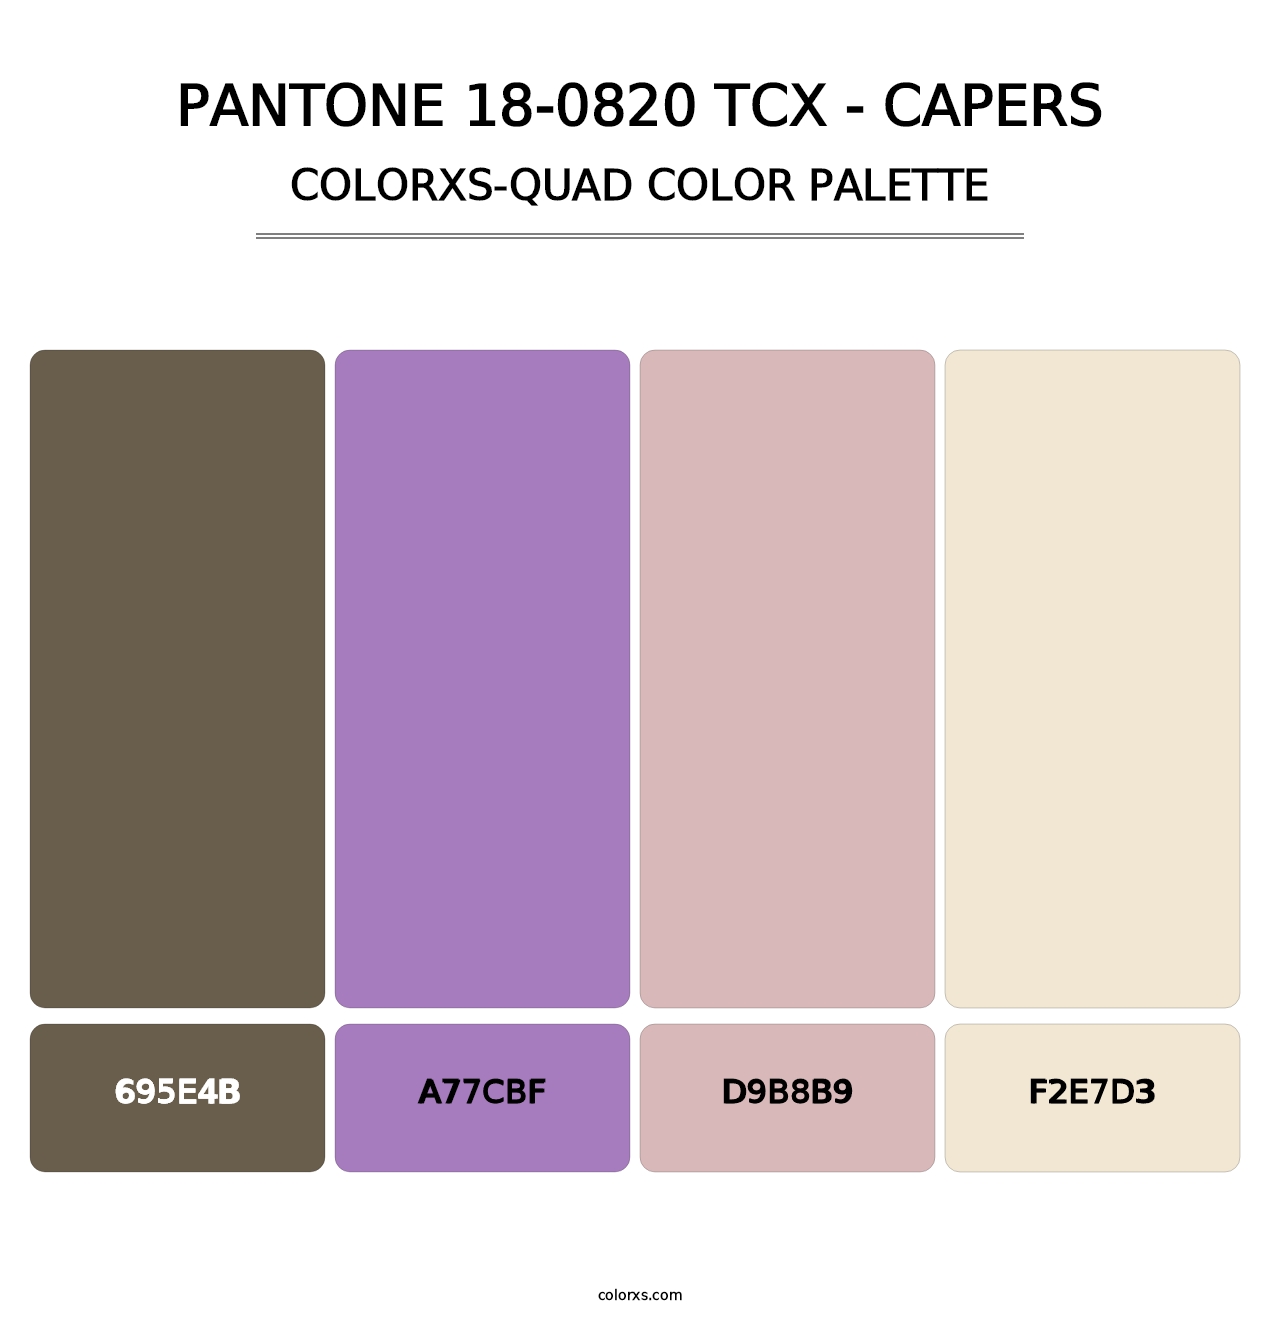 PANTONE 18-0820 TCX - Capers - Colorxs Quad Palette